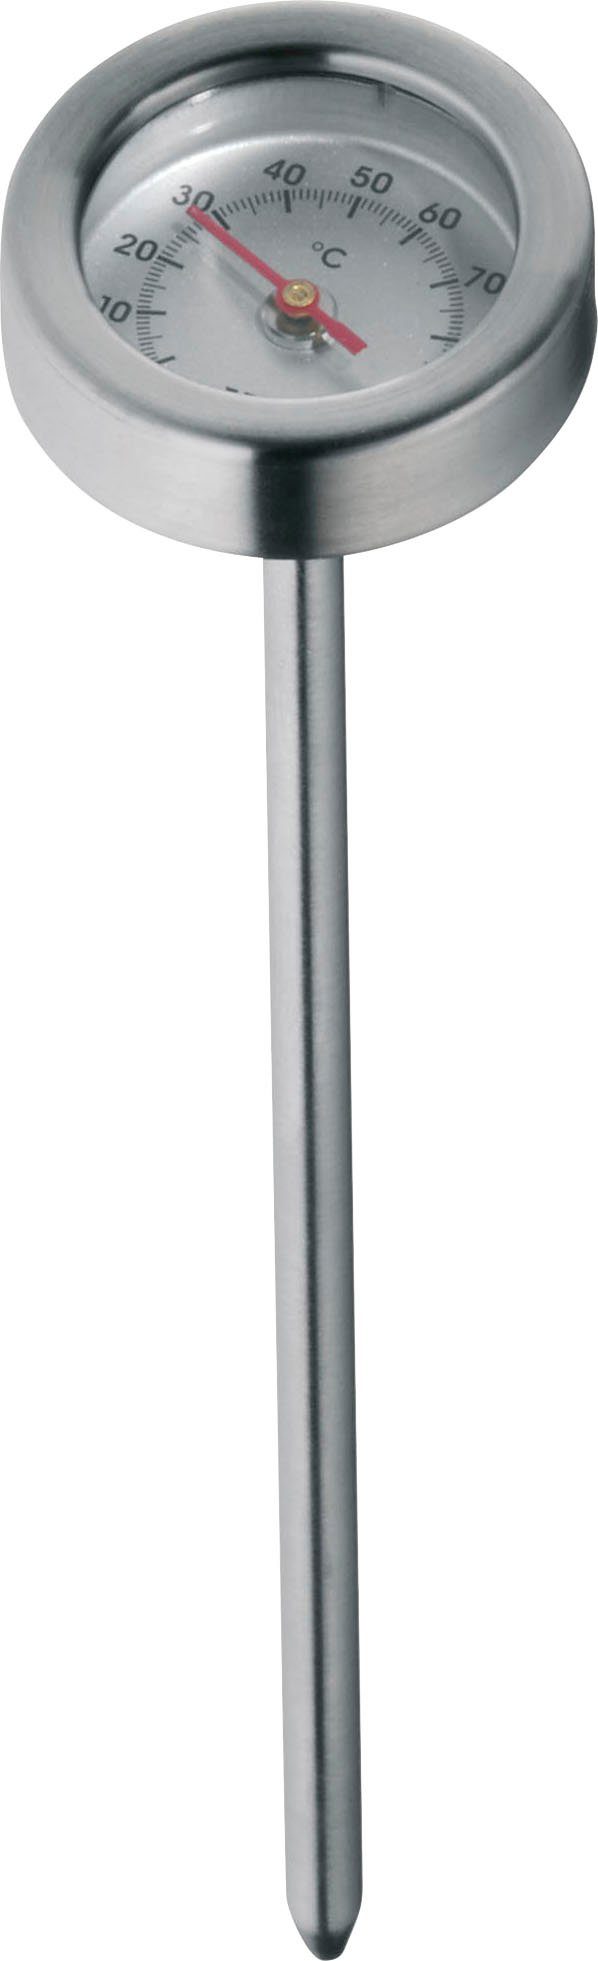 WMF Simmertopf, Cromargan® Edelstahl Induktion 18/10, Rostfrei 18 cm, mit Temperaturanzeige, Ø